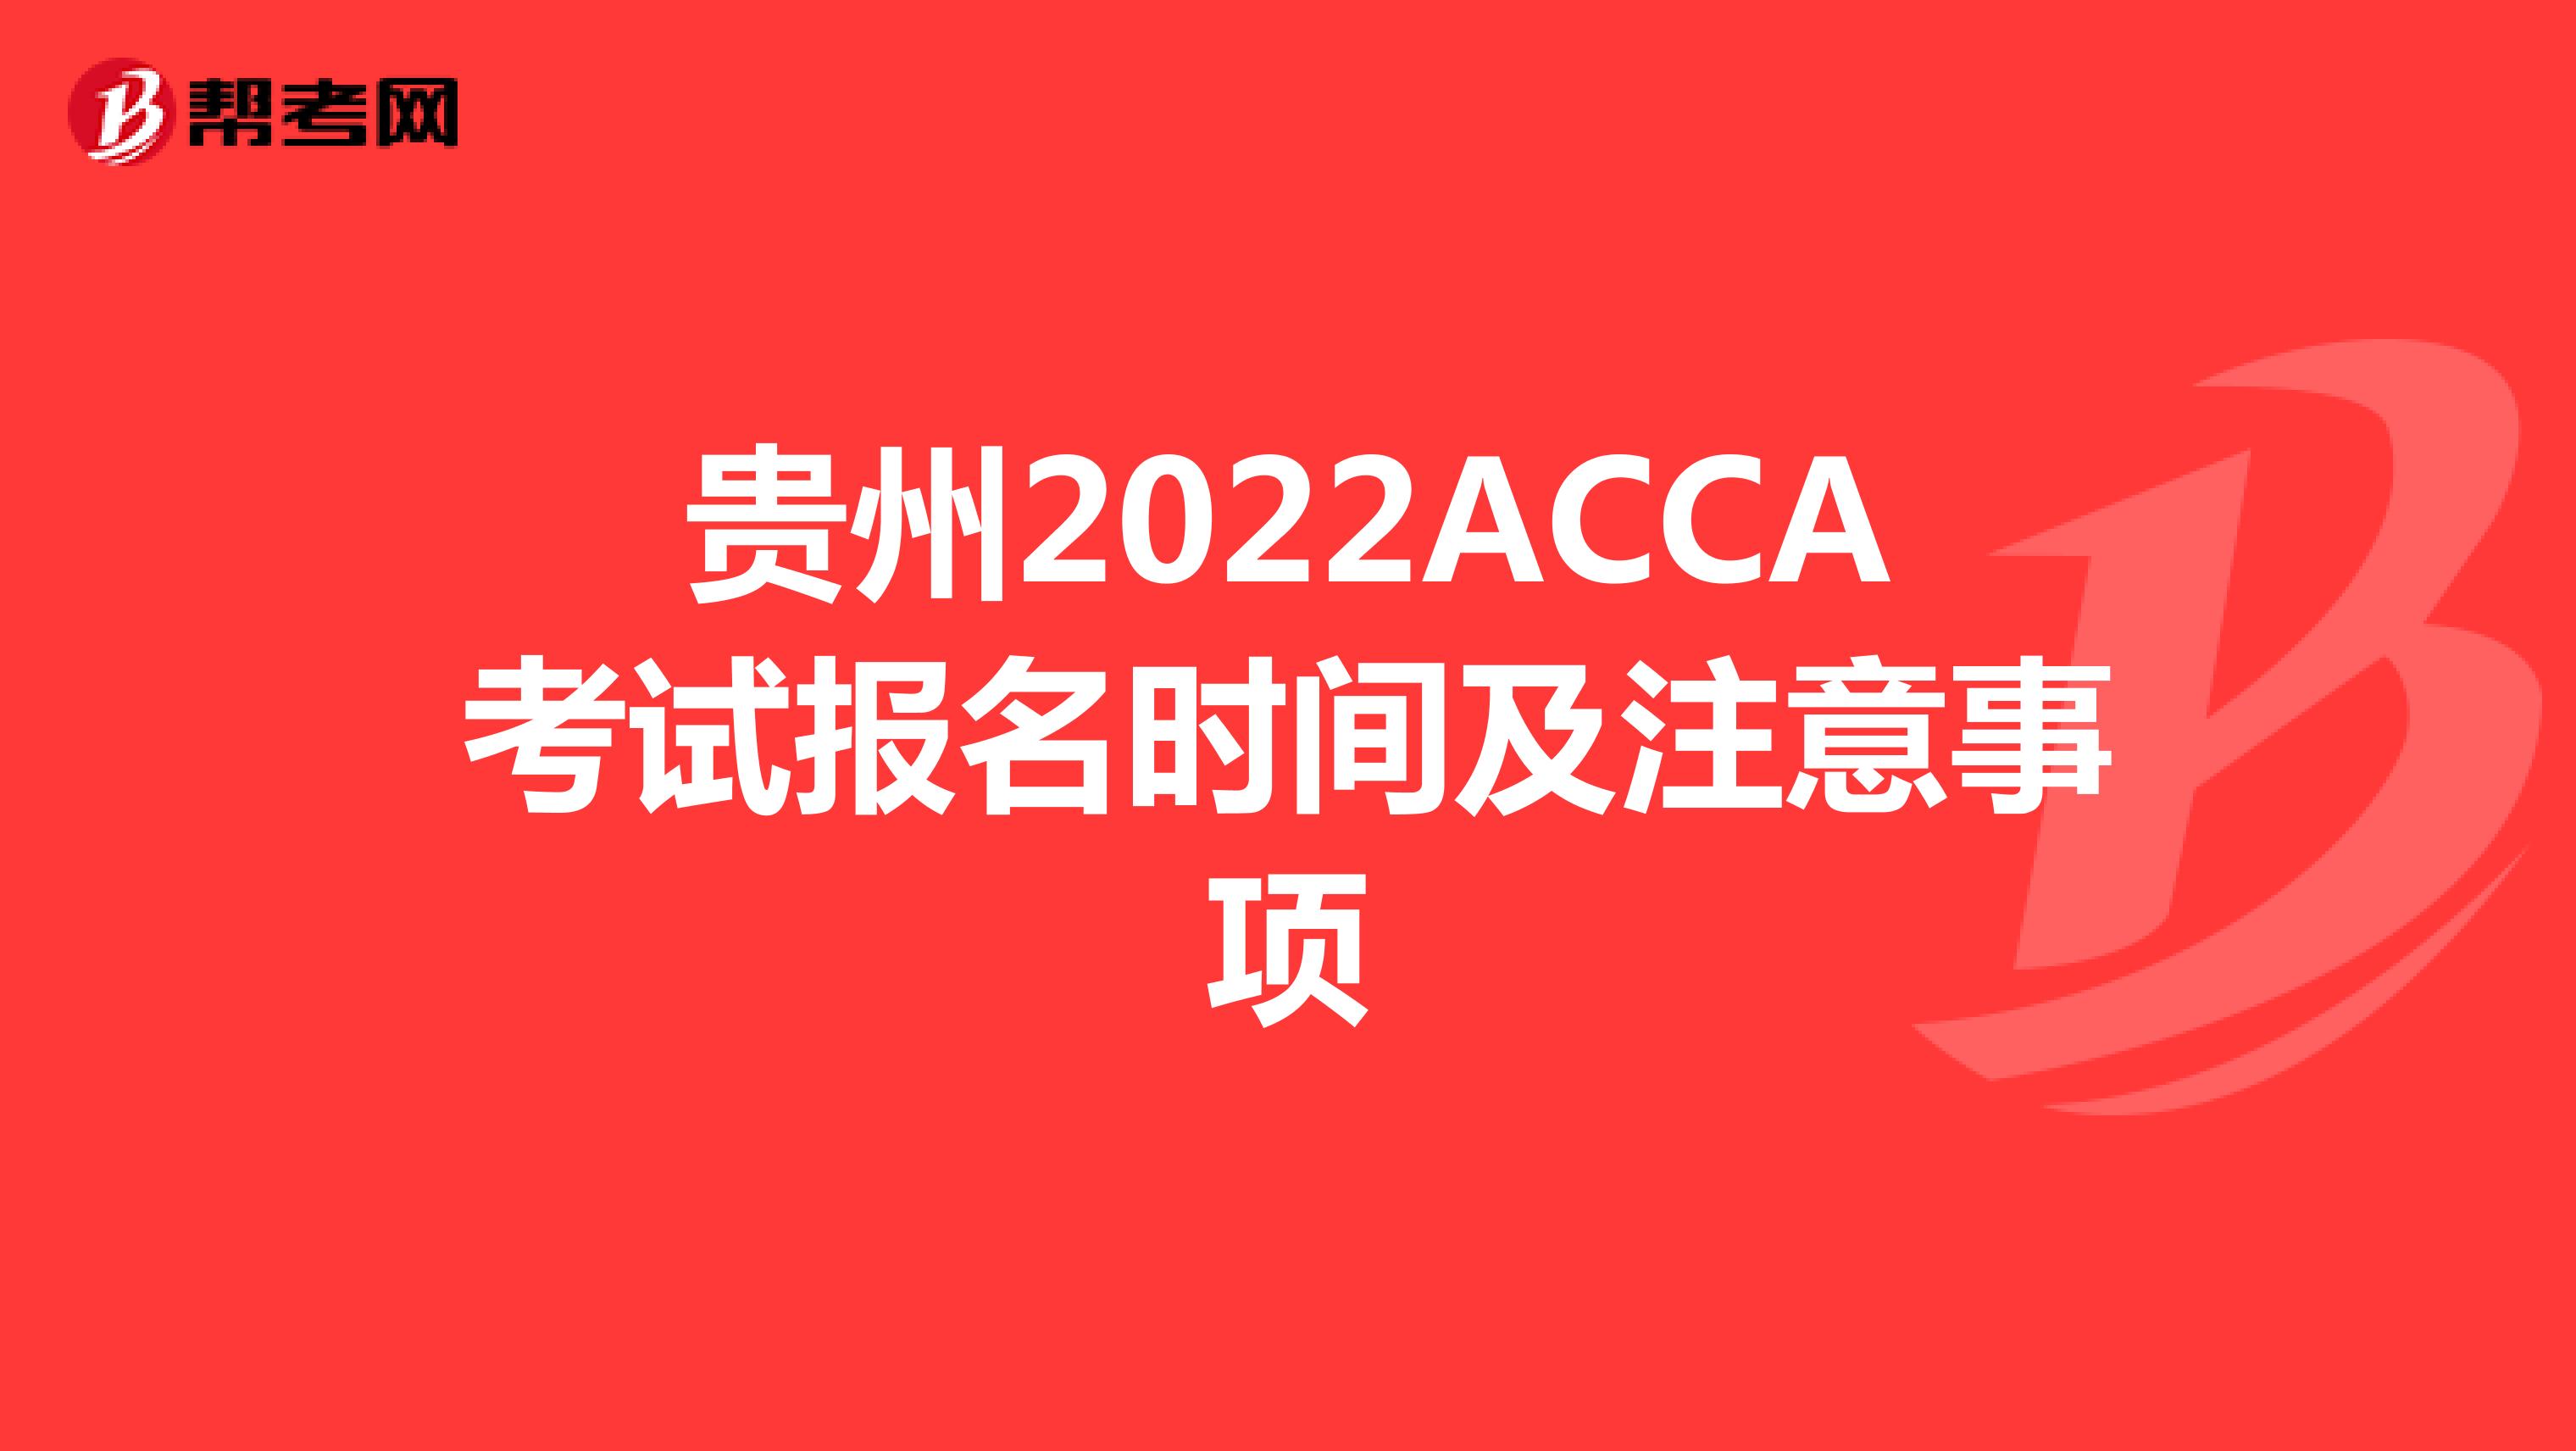 贵州2022ACCA考试报名时间及注意事项